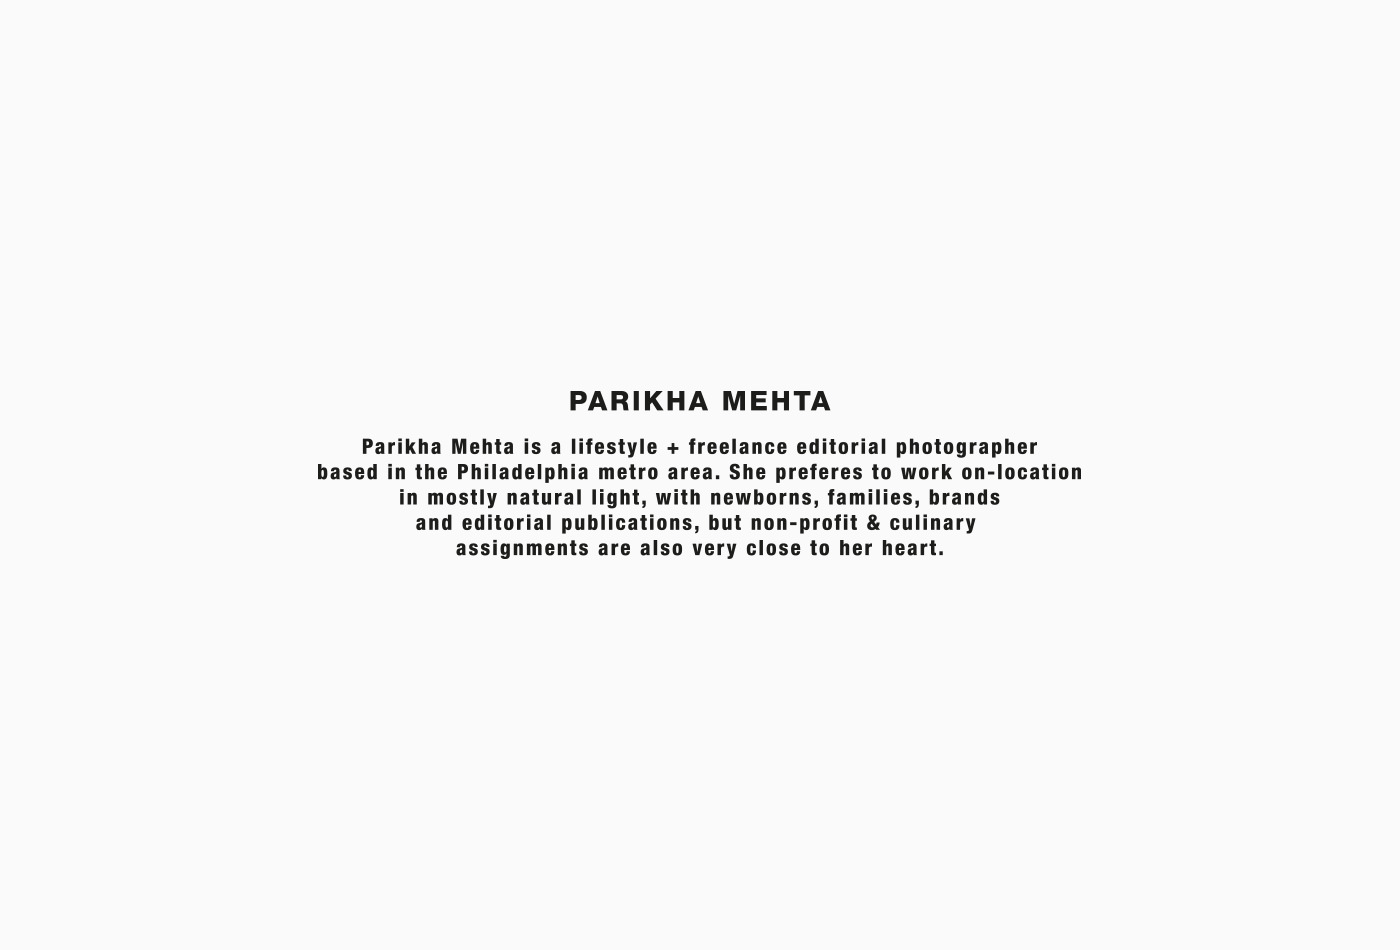 parikha-mahta-photography-families-editorial-philadelphia-metro-area-vacaliebres